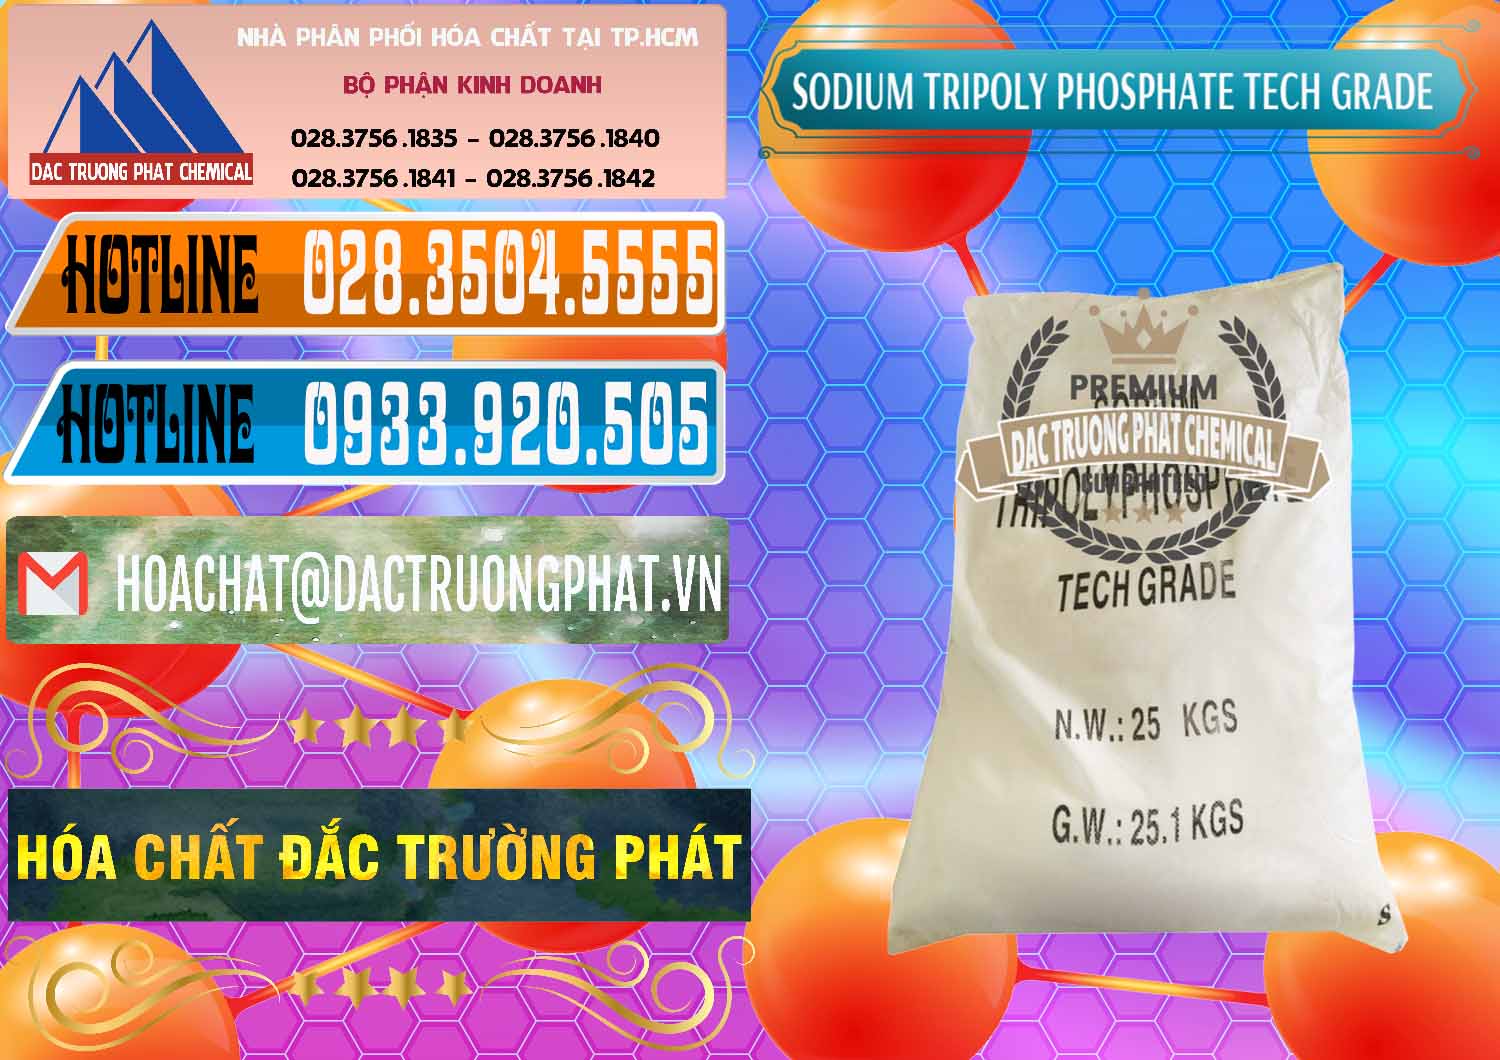 Bán ( cung cấp ) Sodium Tripoly Phosphate - STPP Tech Grade Trung Quốc China - 0453 - Cty kinh doanh _ phân phối hóa chất tại TP.HCM - stmp.net